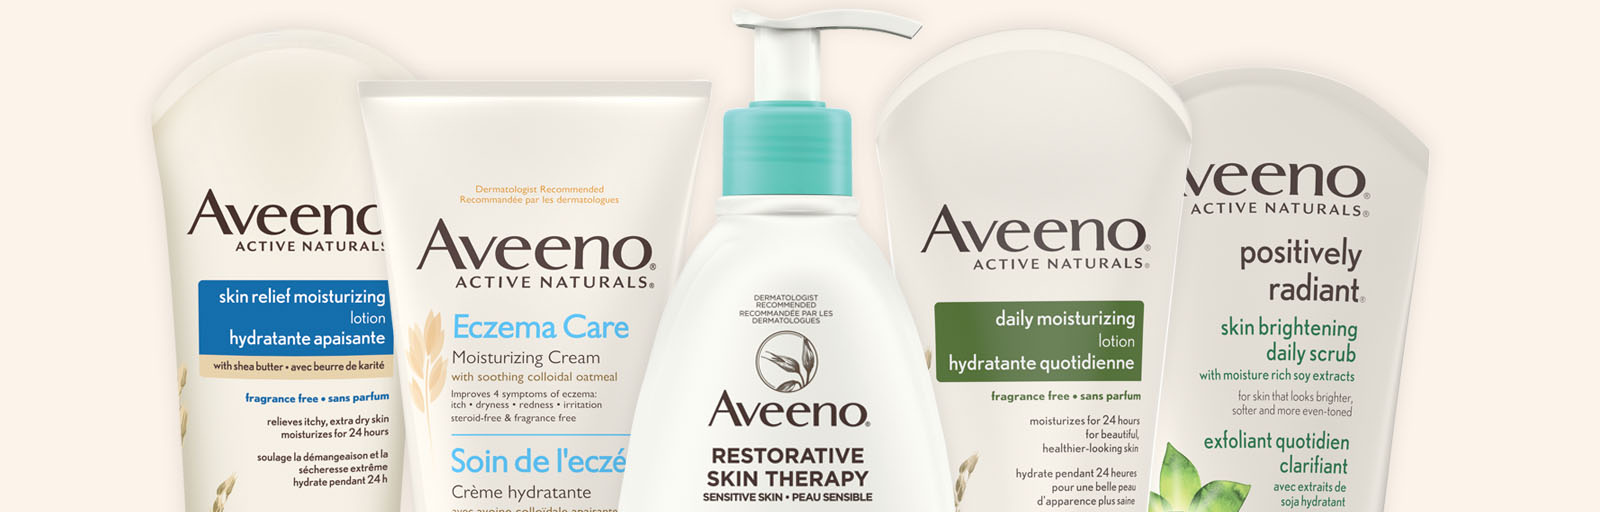 Produits de soins corporels Aveeno, pour une peau hydratée et saine